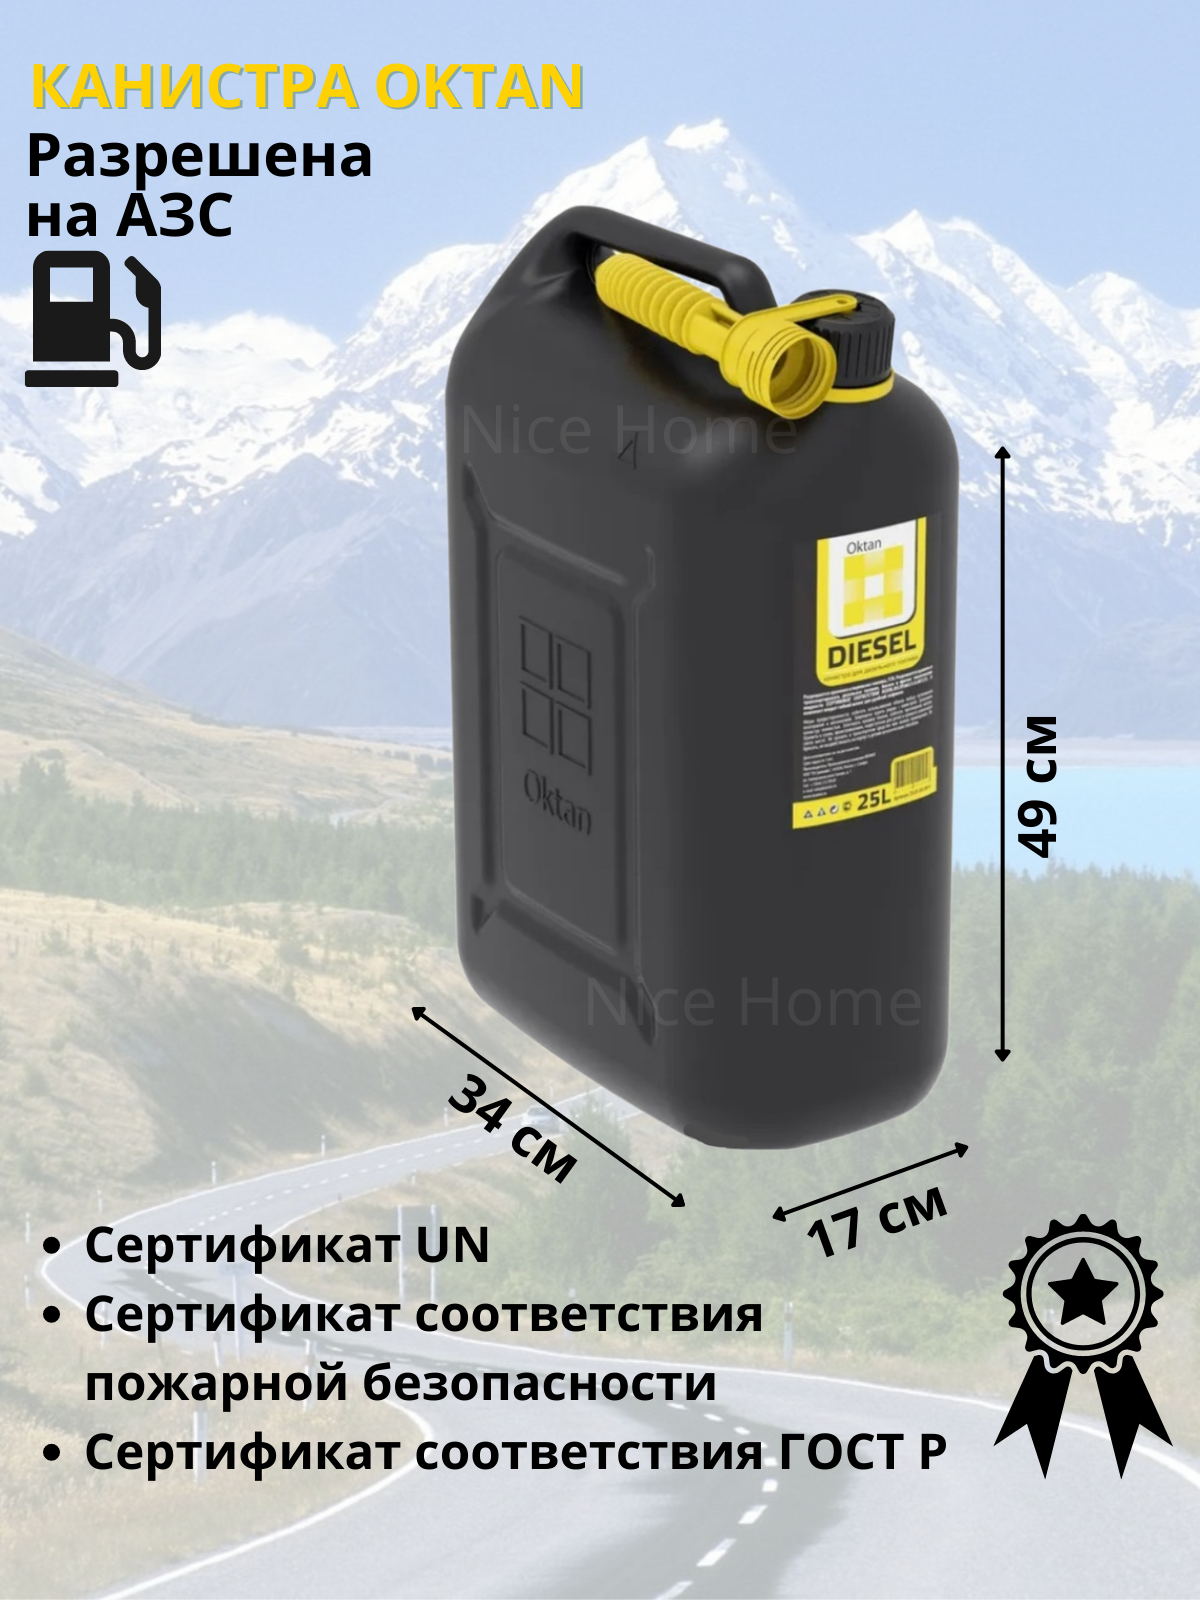 Канистра OKTAN Diesel 25010100-4 25 л